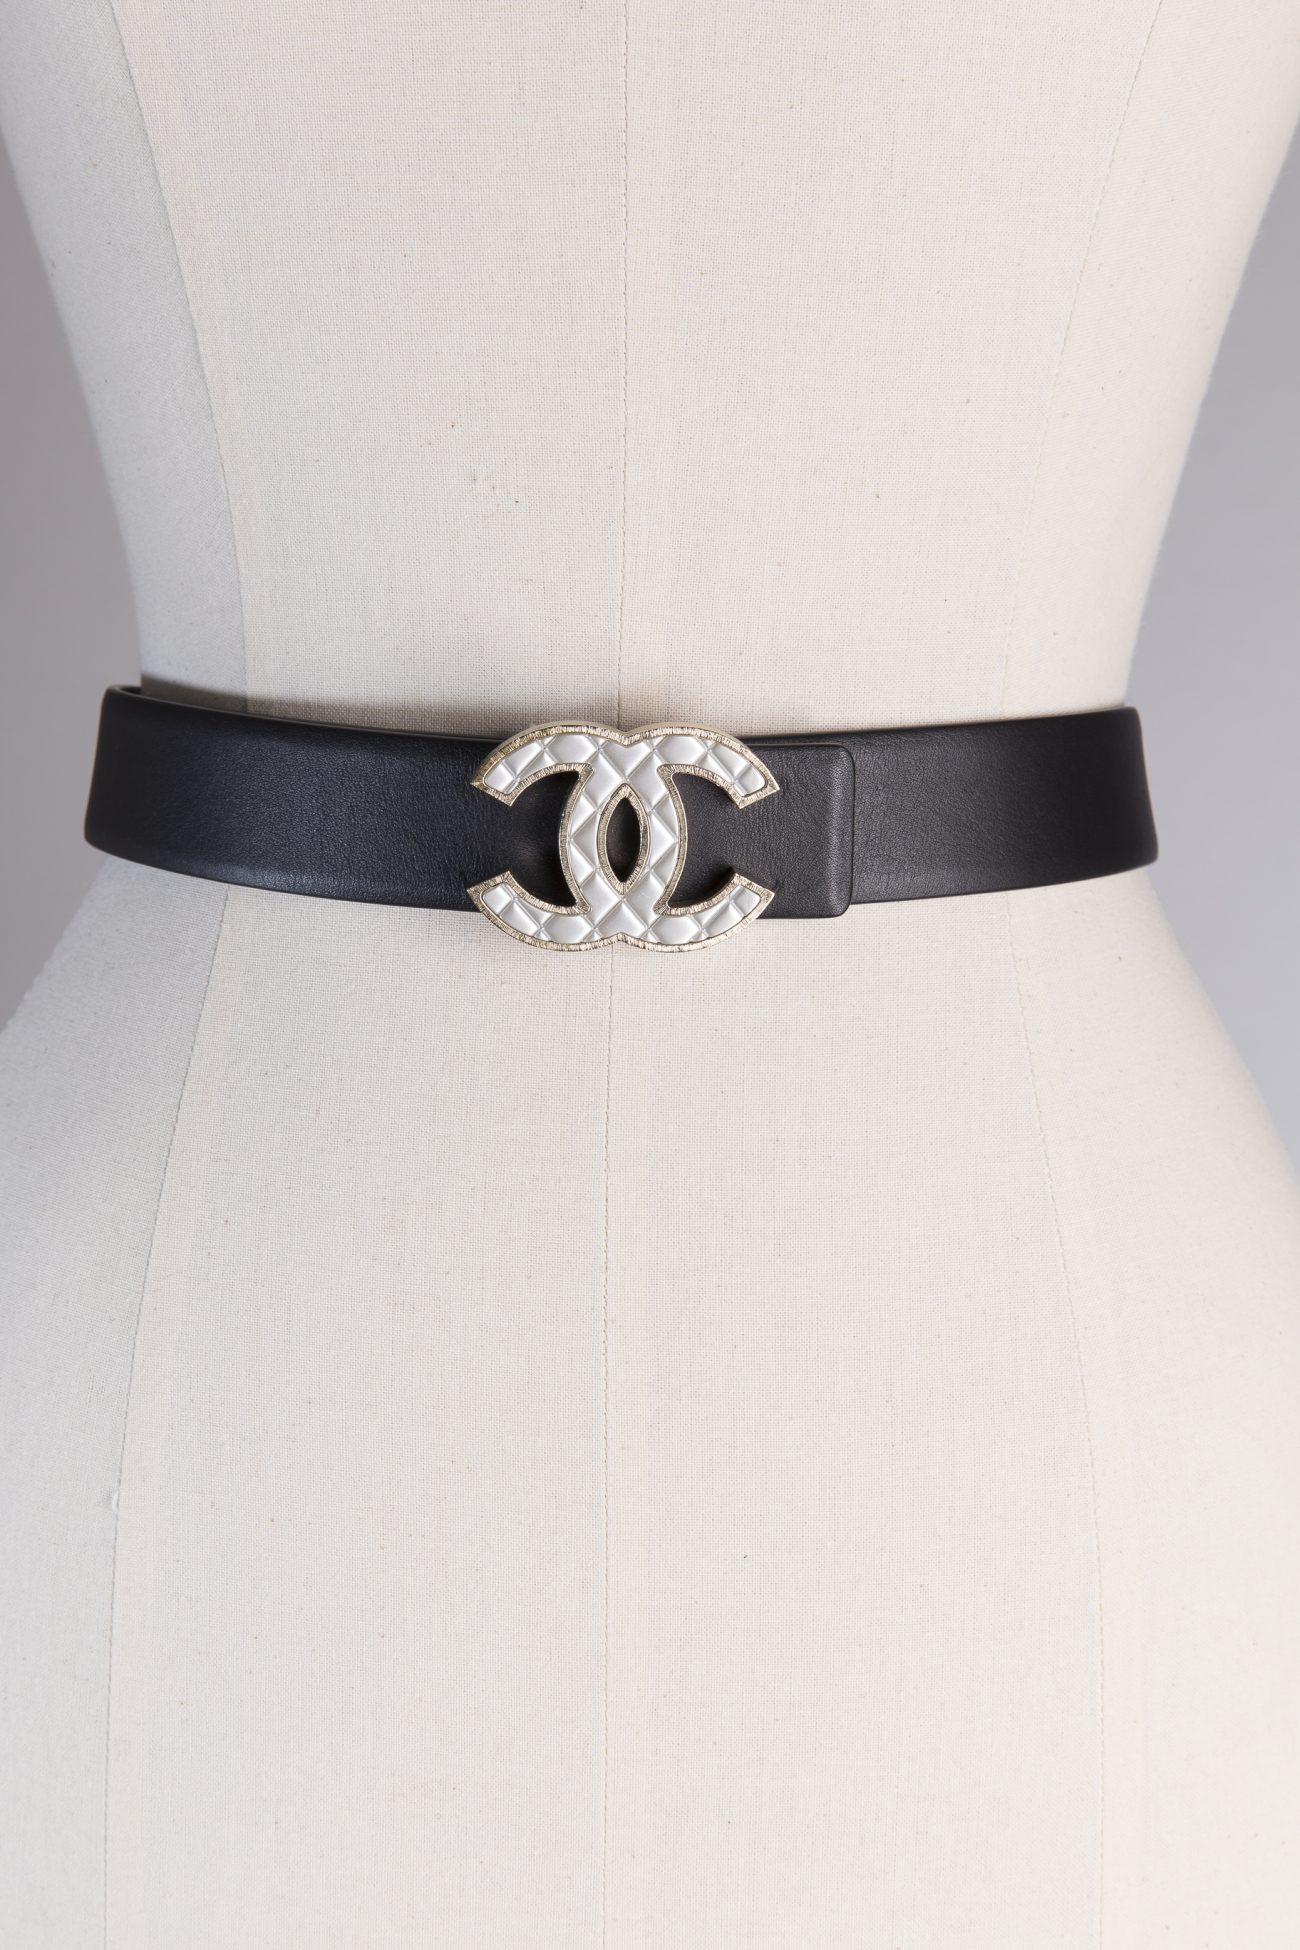 Cheap Chanel Belts 10409 , www.suchwholesale.com , wholesale Chanel Belts  outlet.